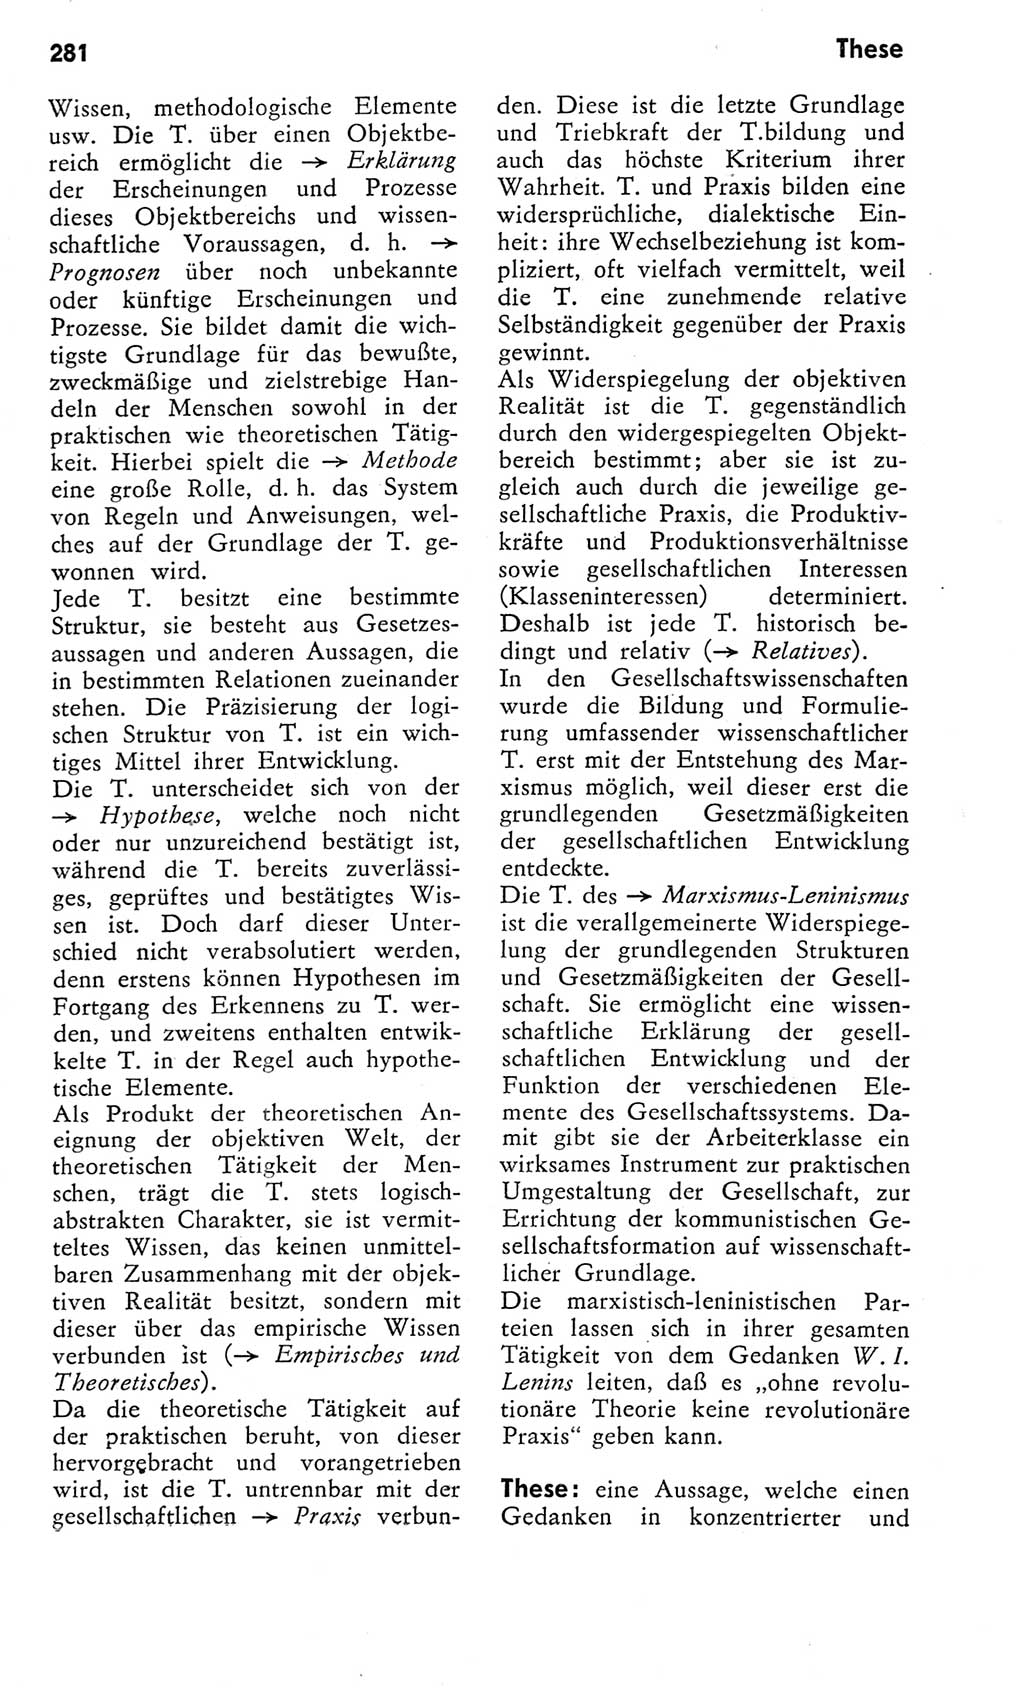 Kleines Wörterbuch der marxistisch-leninistischen Philosophie [Deutsche Demokratische Republik (DDR)] 1975, Seite 281 (Kl. Wb. ML Phil. DDR 1975, S. 281)